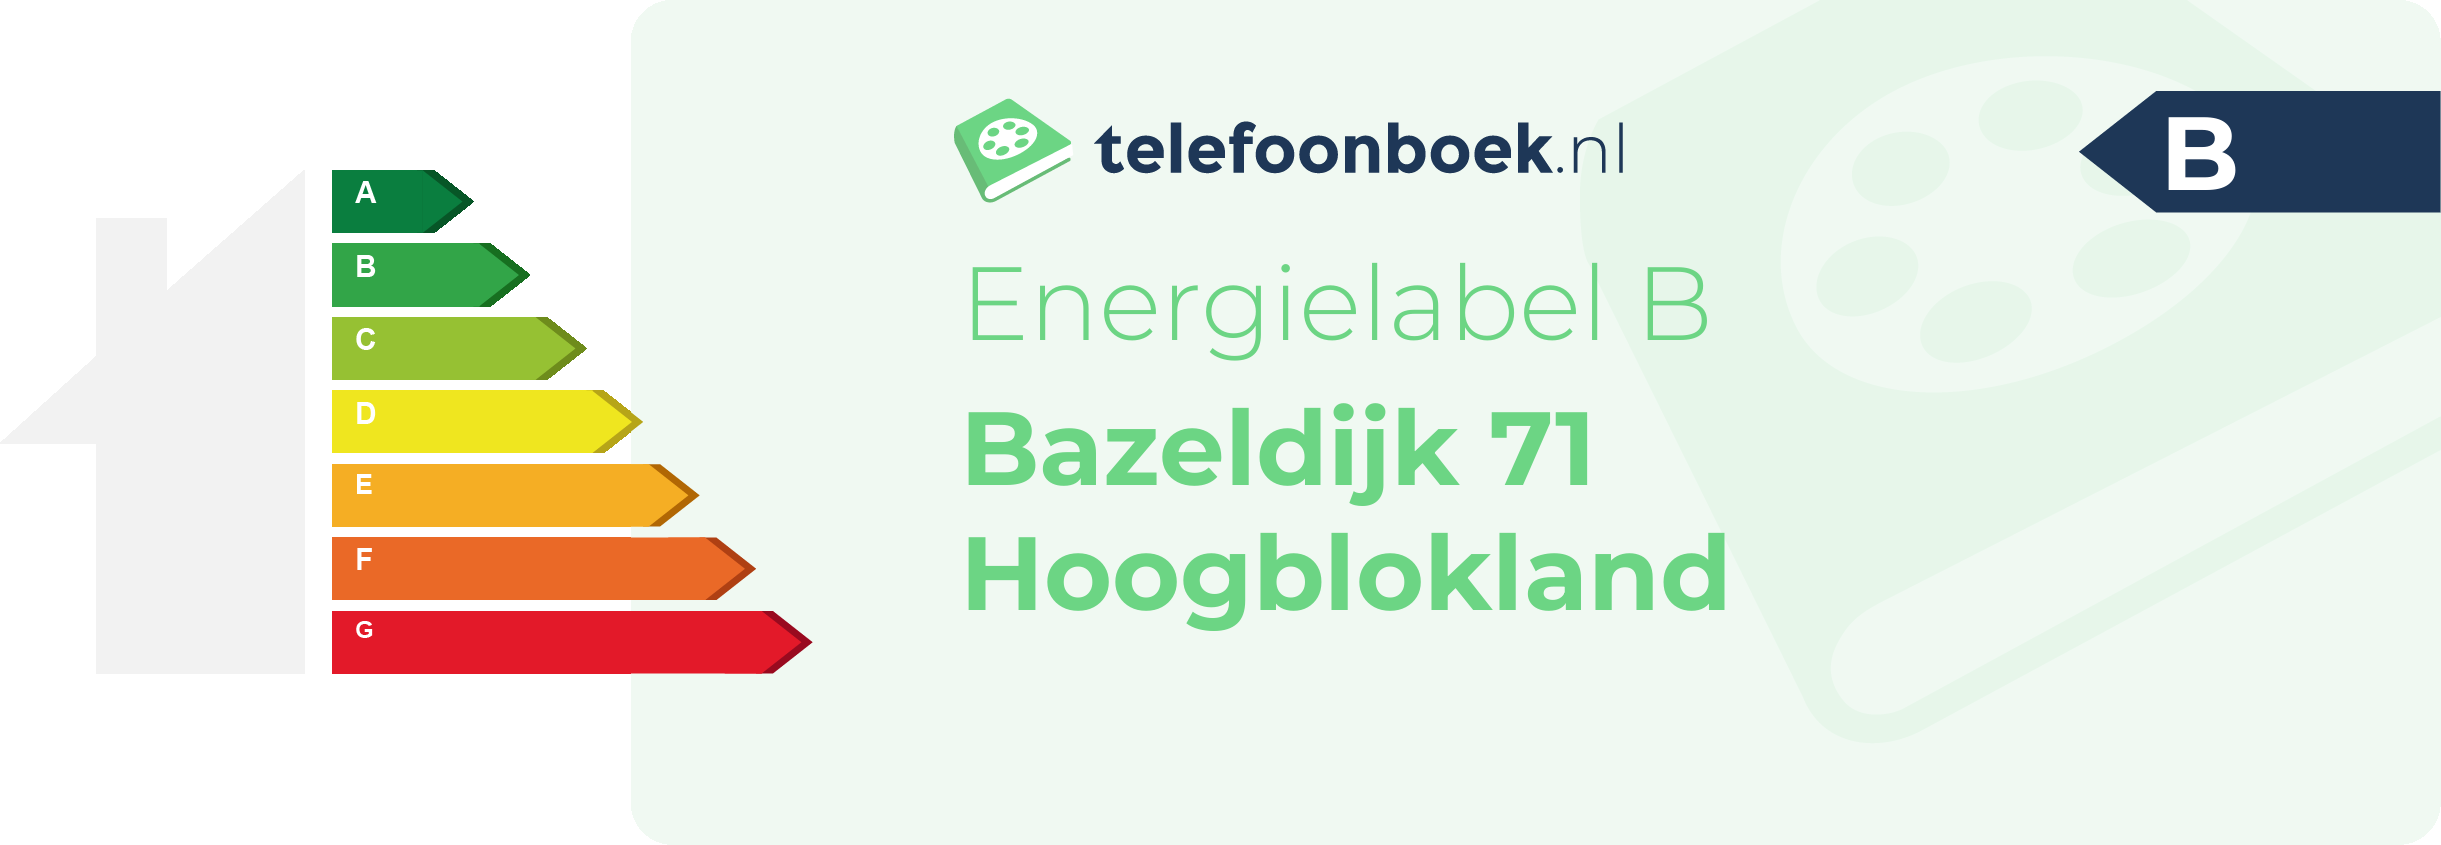 Energielabel Bazeldijk 71 Hoogblokland